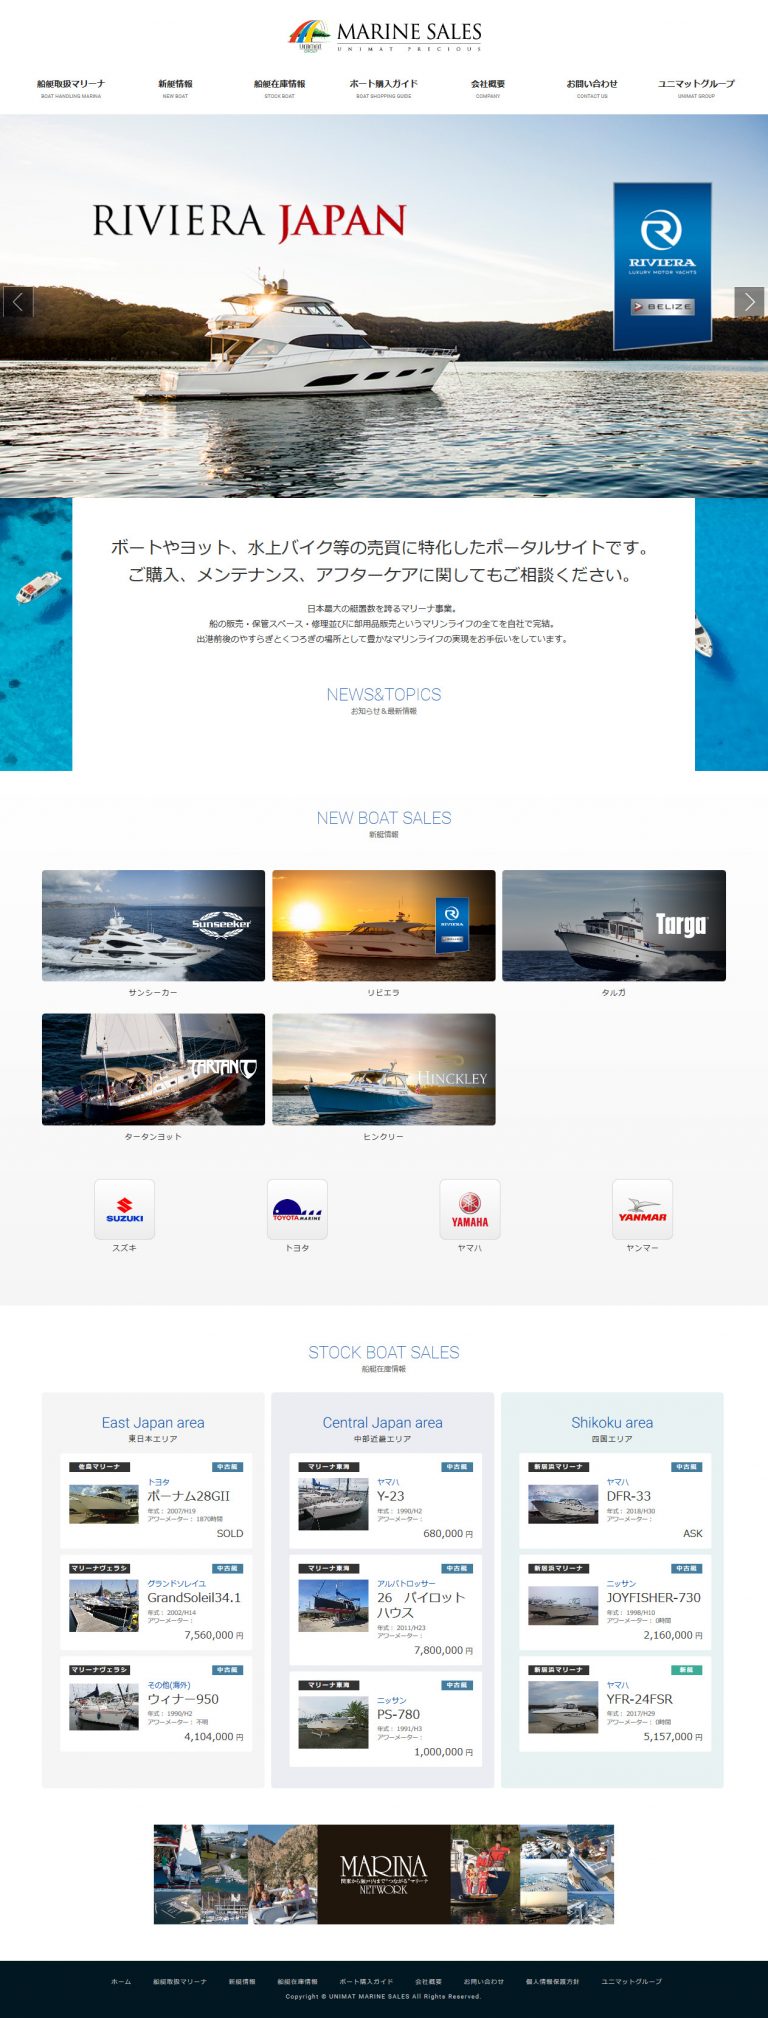 9月 | 2018 | ボートやヨットなど高級クルーザーの新艇・中古艇の購入・販売に特化したポータルサイト ユニマットプレシャス